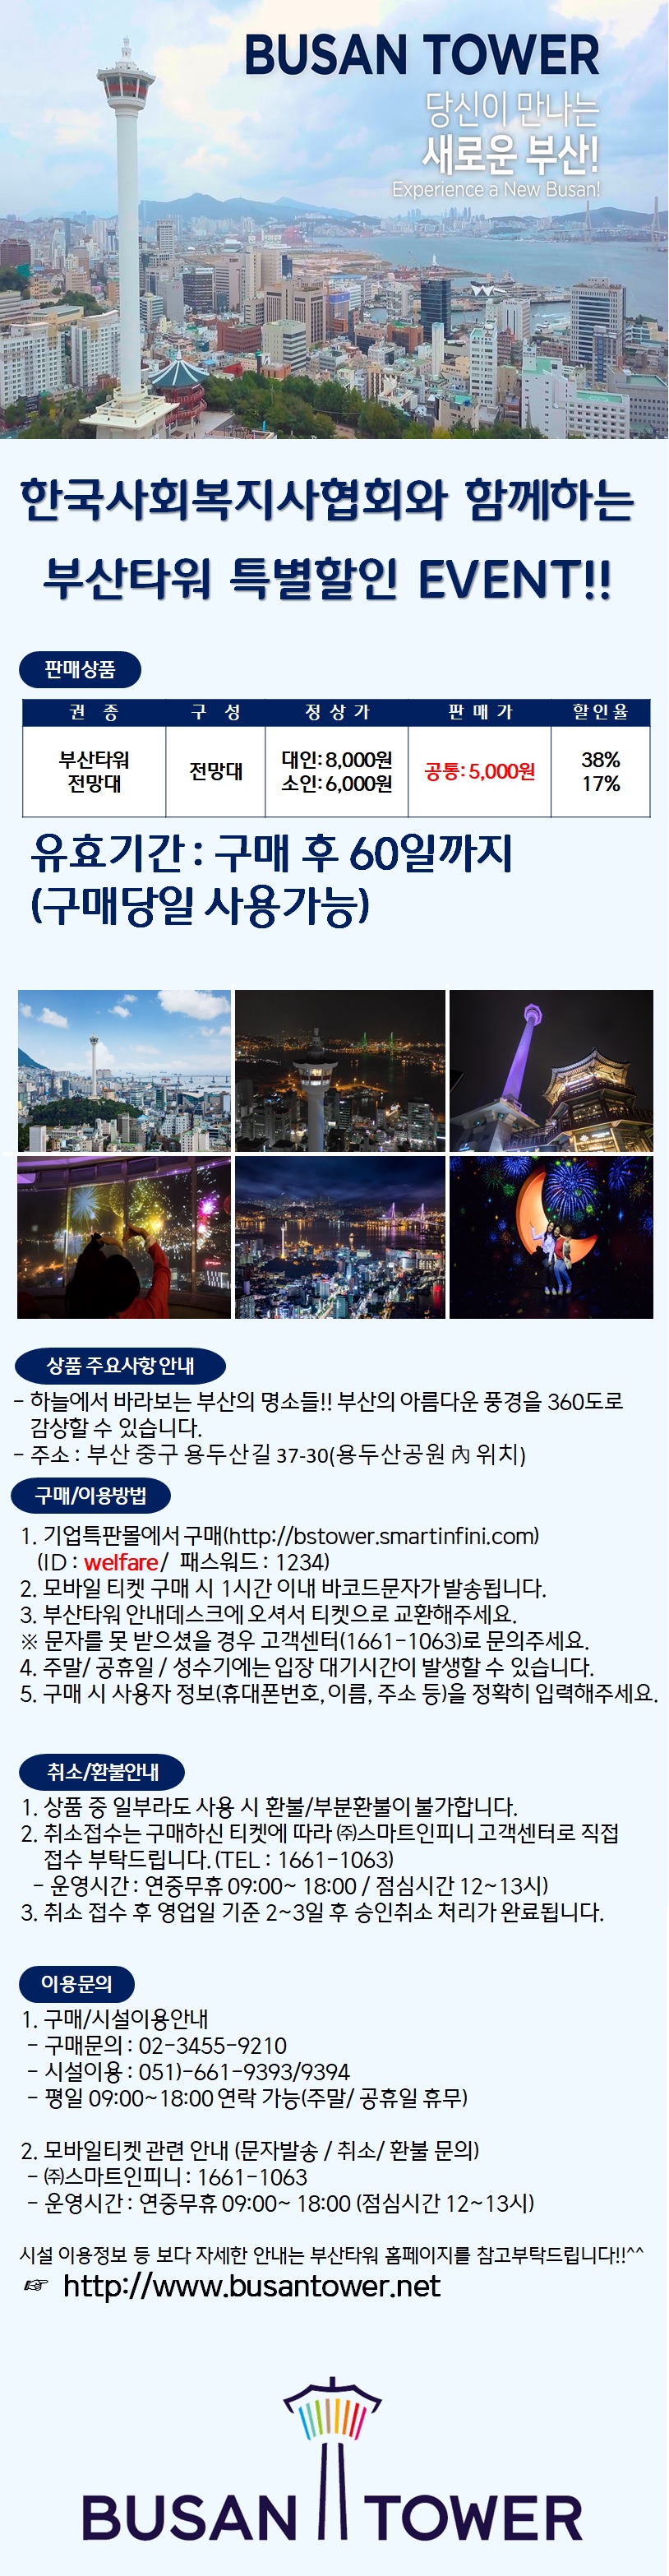 한국사회복지사협회(2020)_부산타워.jpg